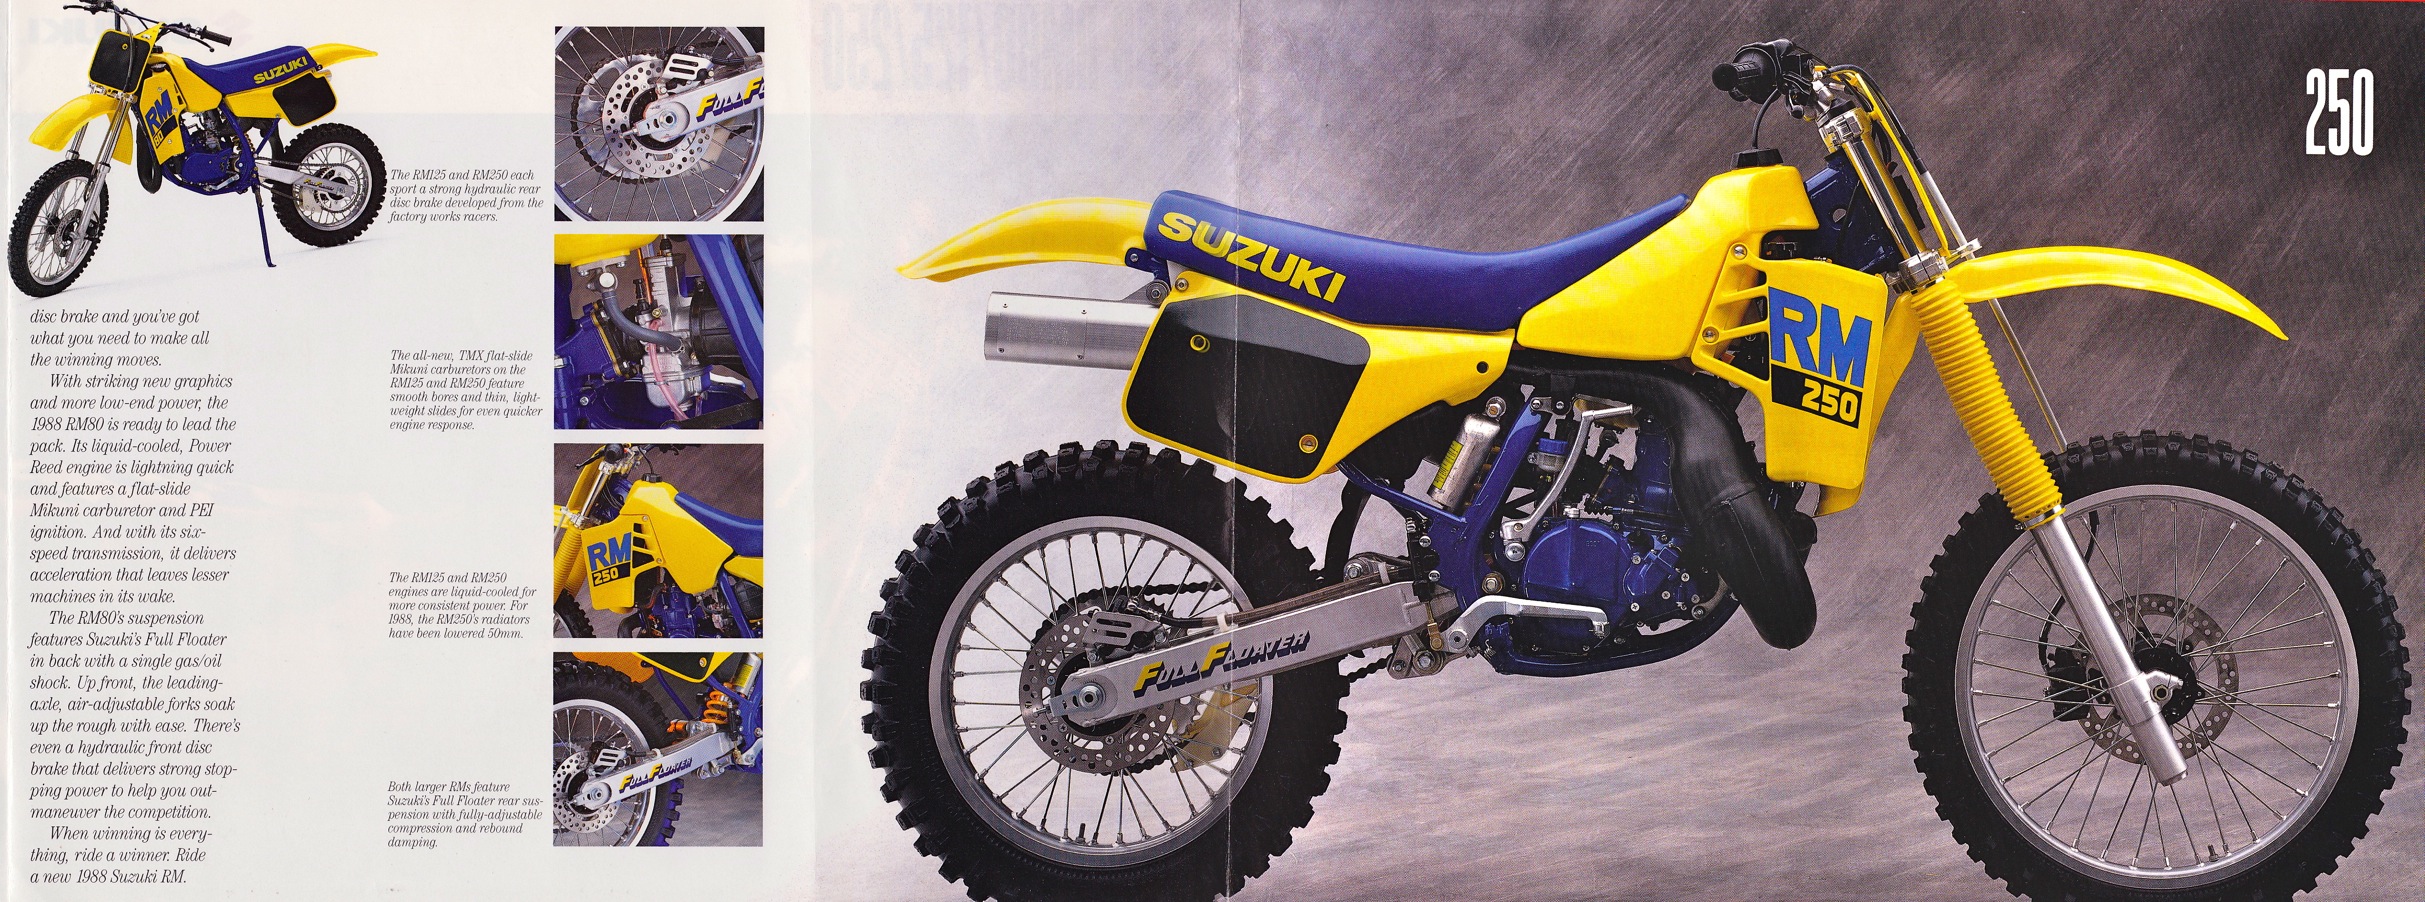 Мотоцикл Suzuki RM 125 1988